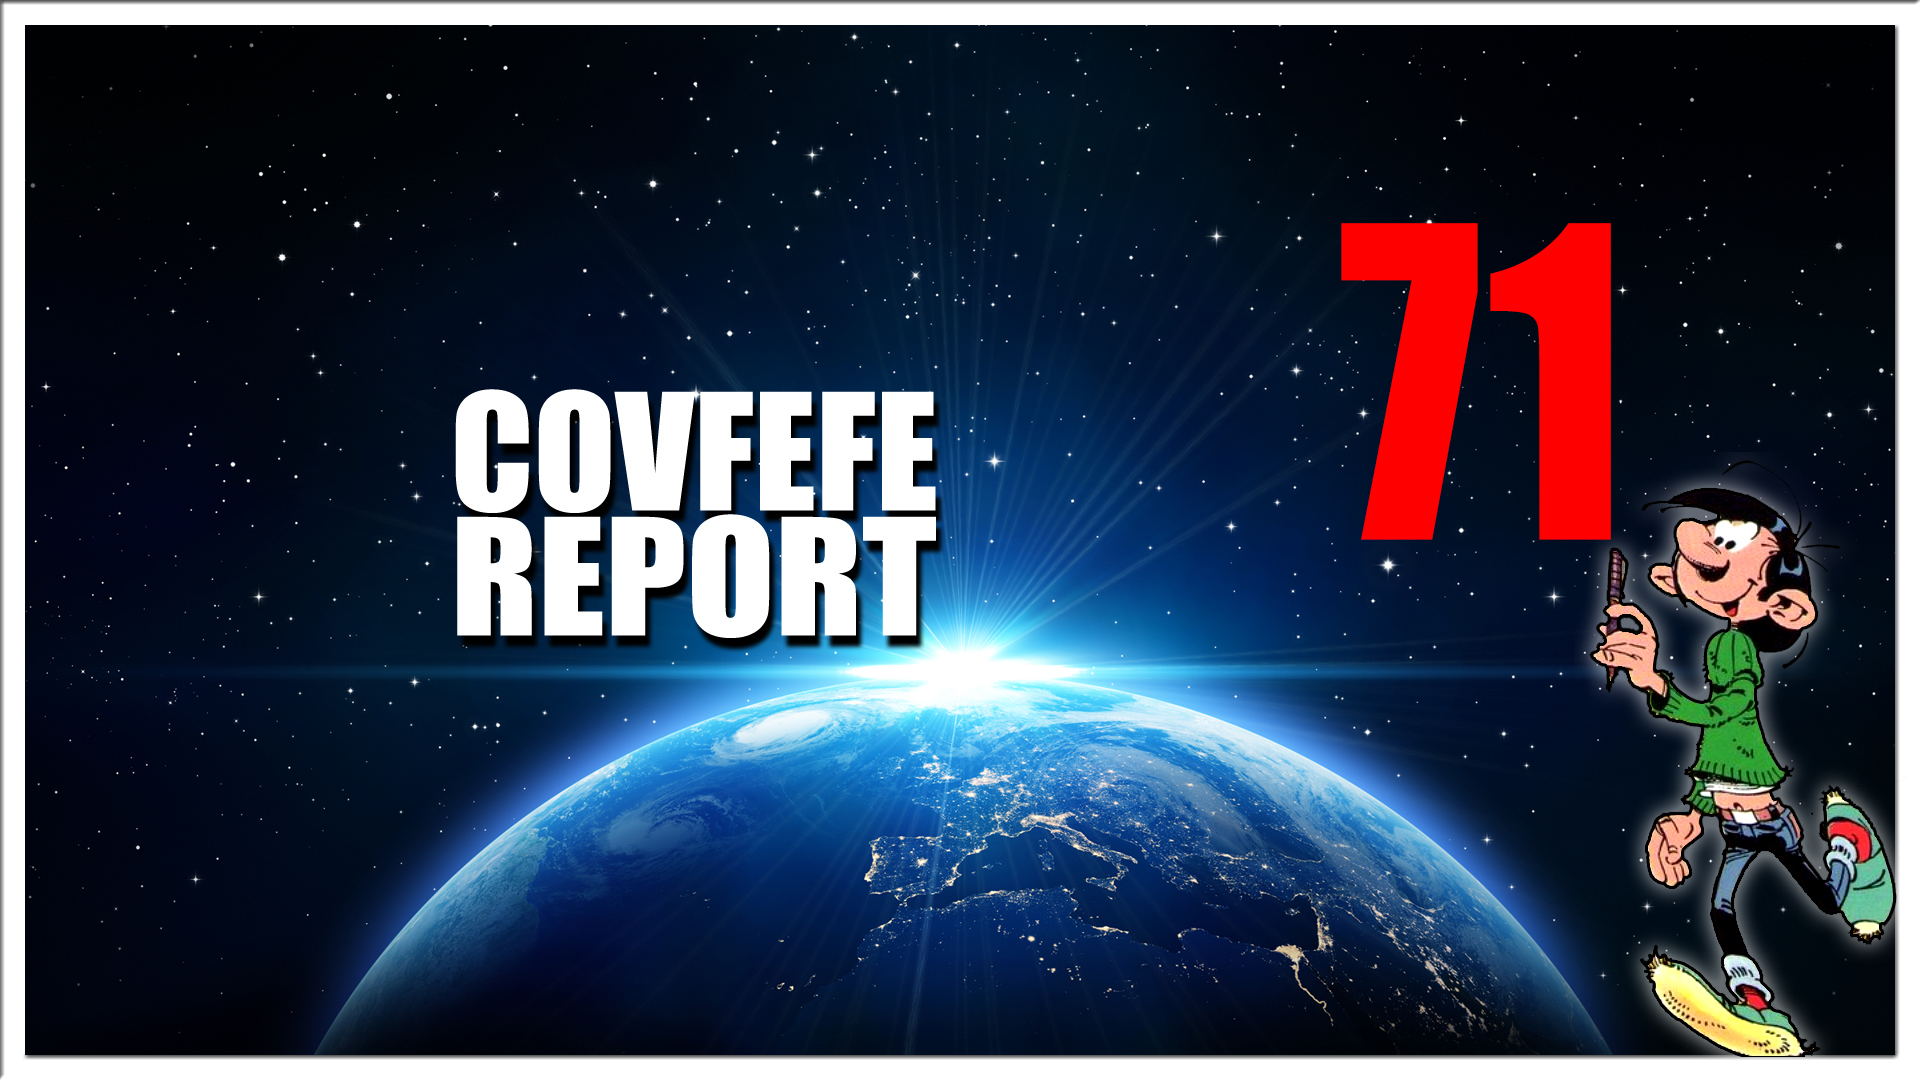 Covfefe Report 71. Radar cirkel rond, Agenda 21, Happy weekend